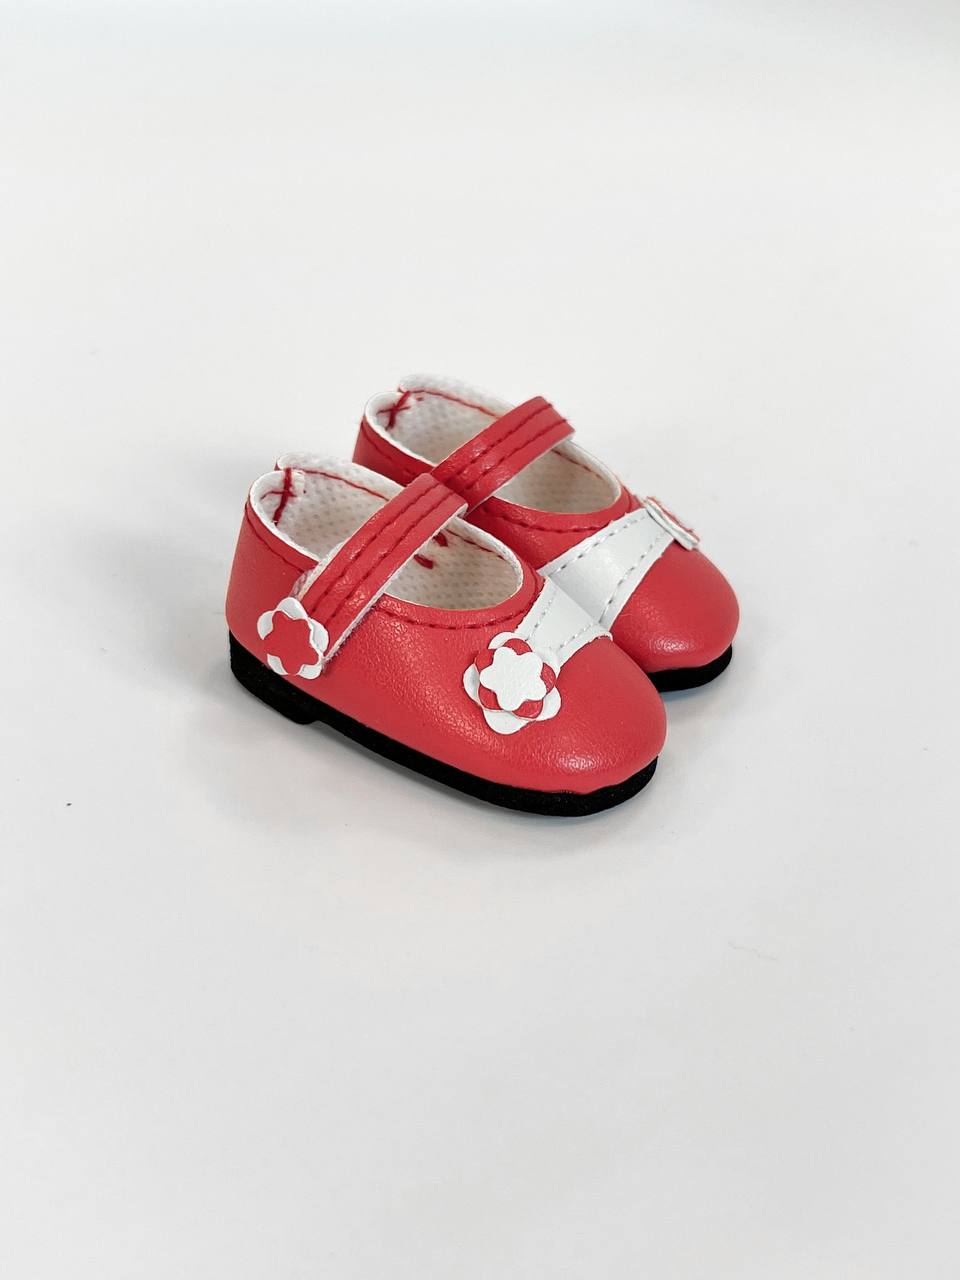 Paola Reina Туфли красные с цветочком, для кукол 32 см, арт. 63215